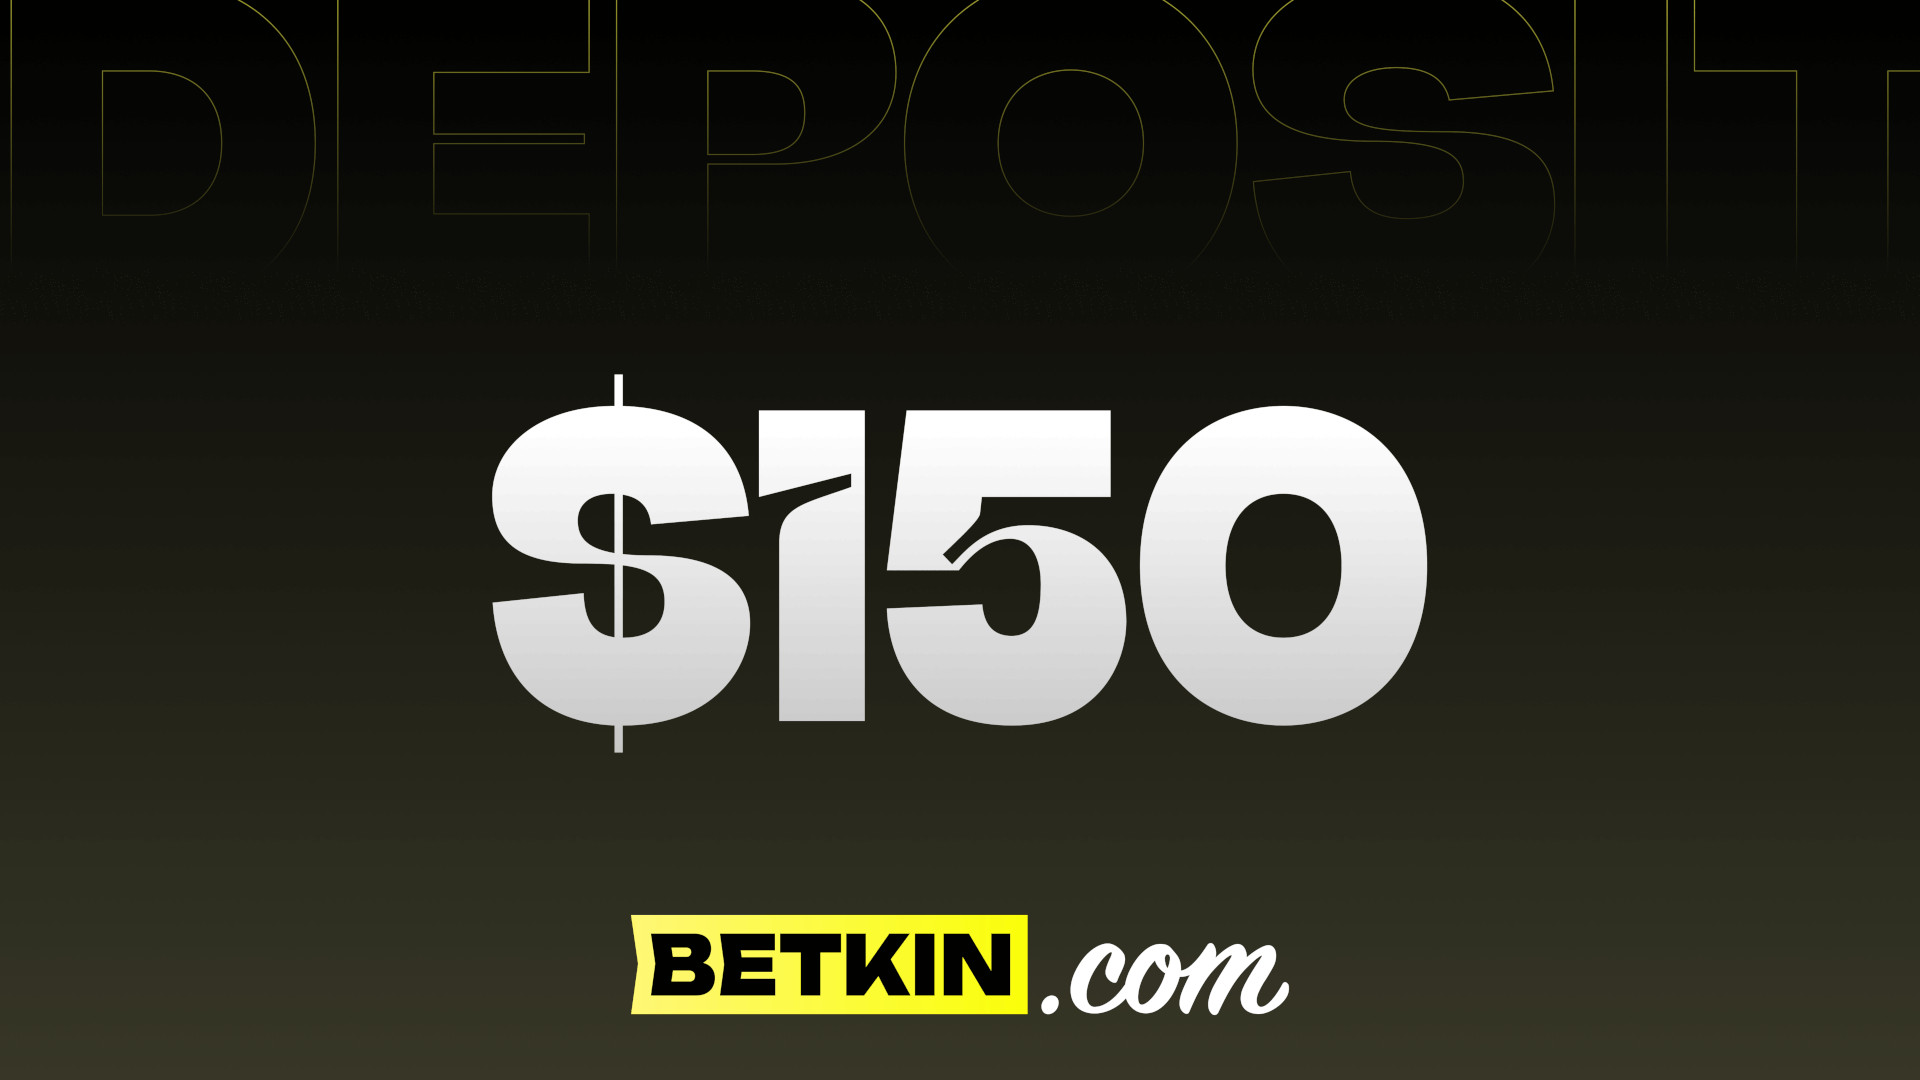 Betkin $150 Coupon, 166.96$